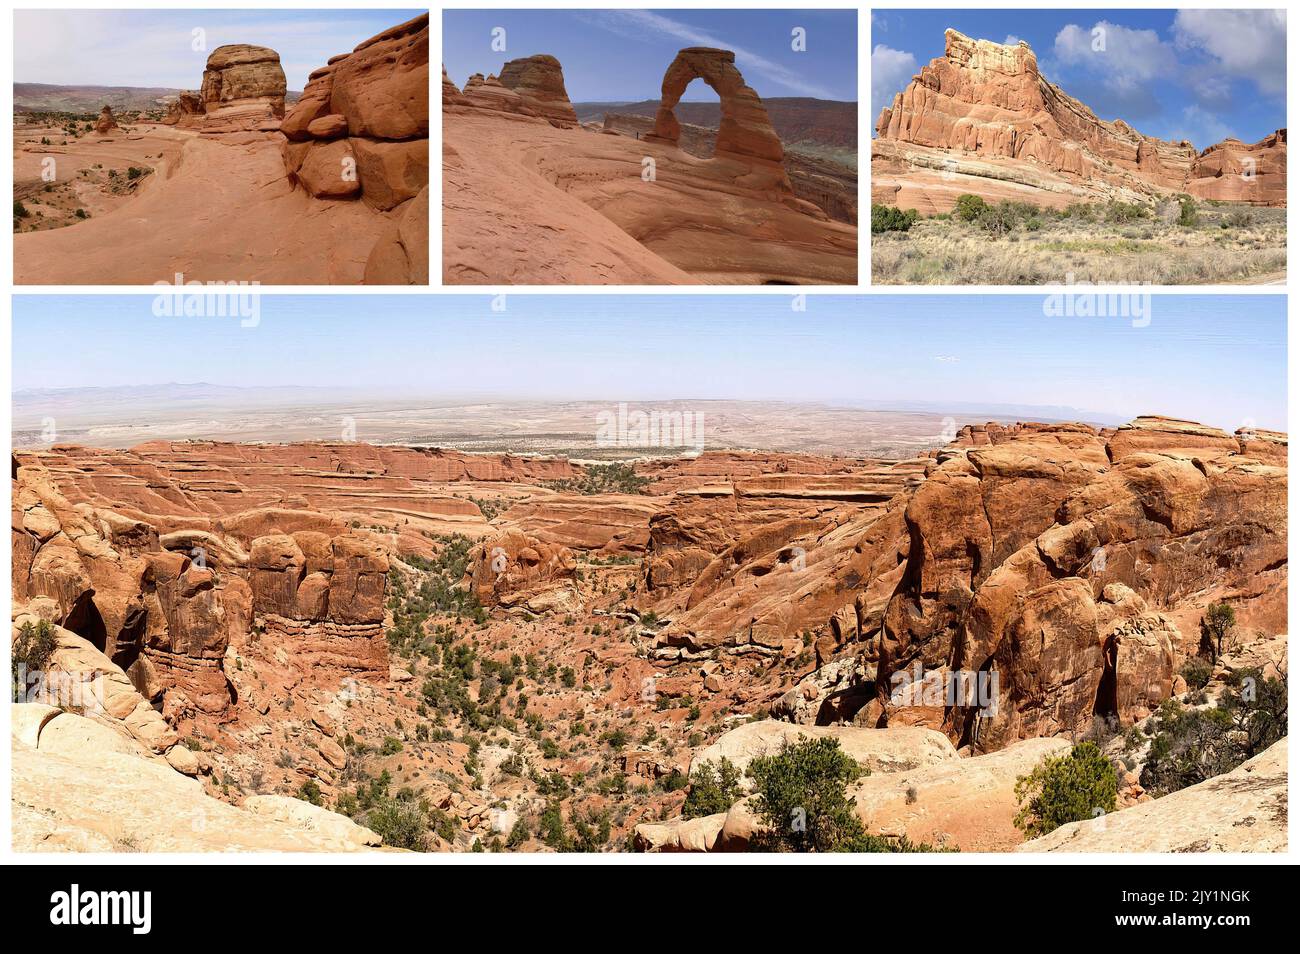 L'iconica Monument Valley, Arizona, uno dei simboli degli Stati Uniti e del vecchio e selvaggio West, ora riserva indiana Navajo (1) Foto Stock